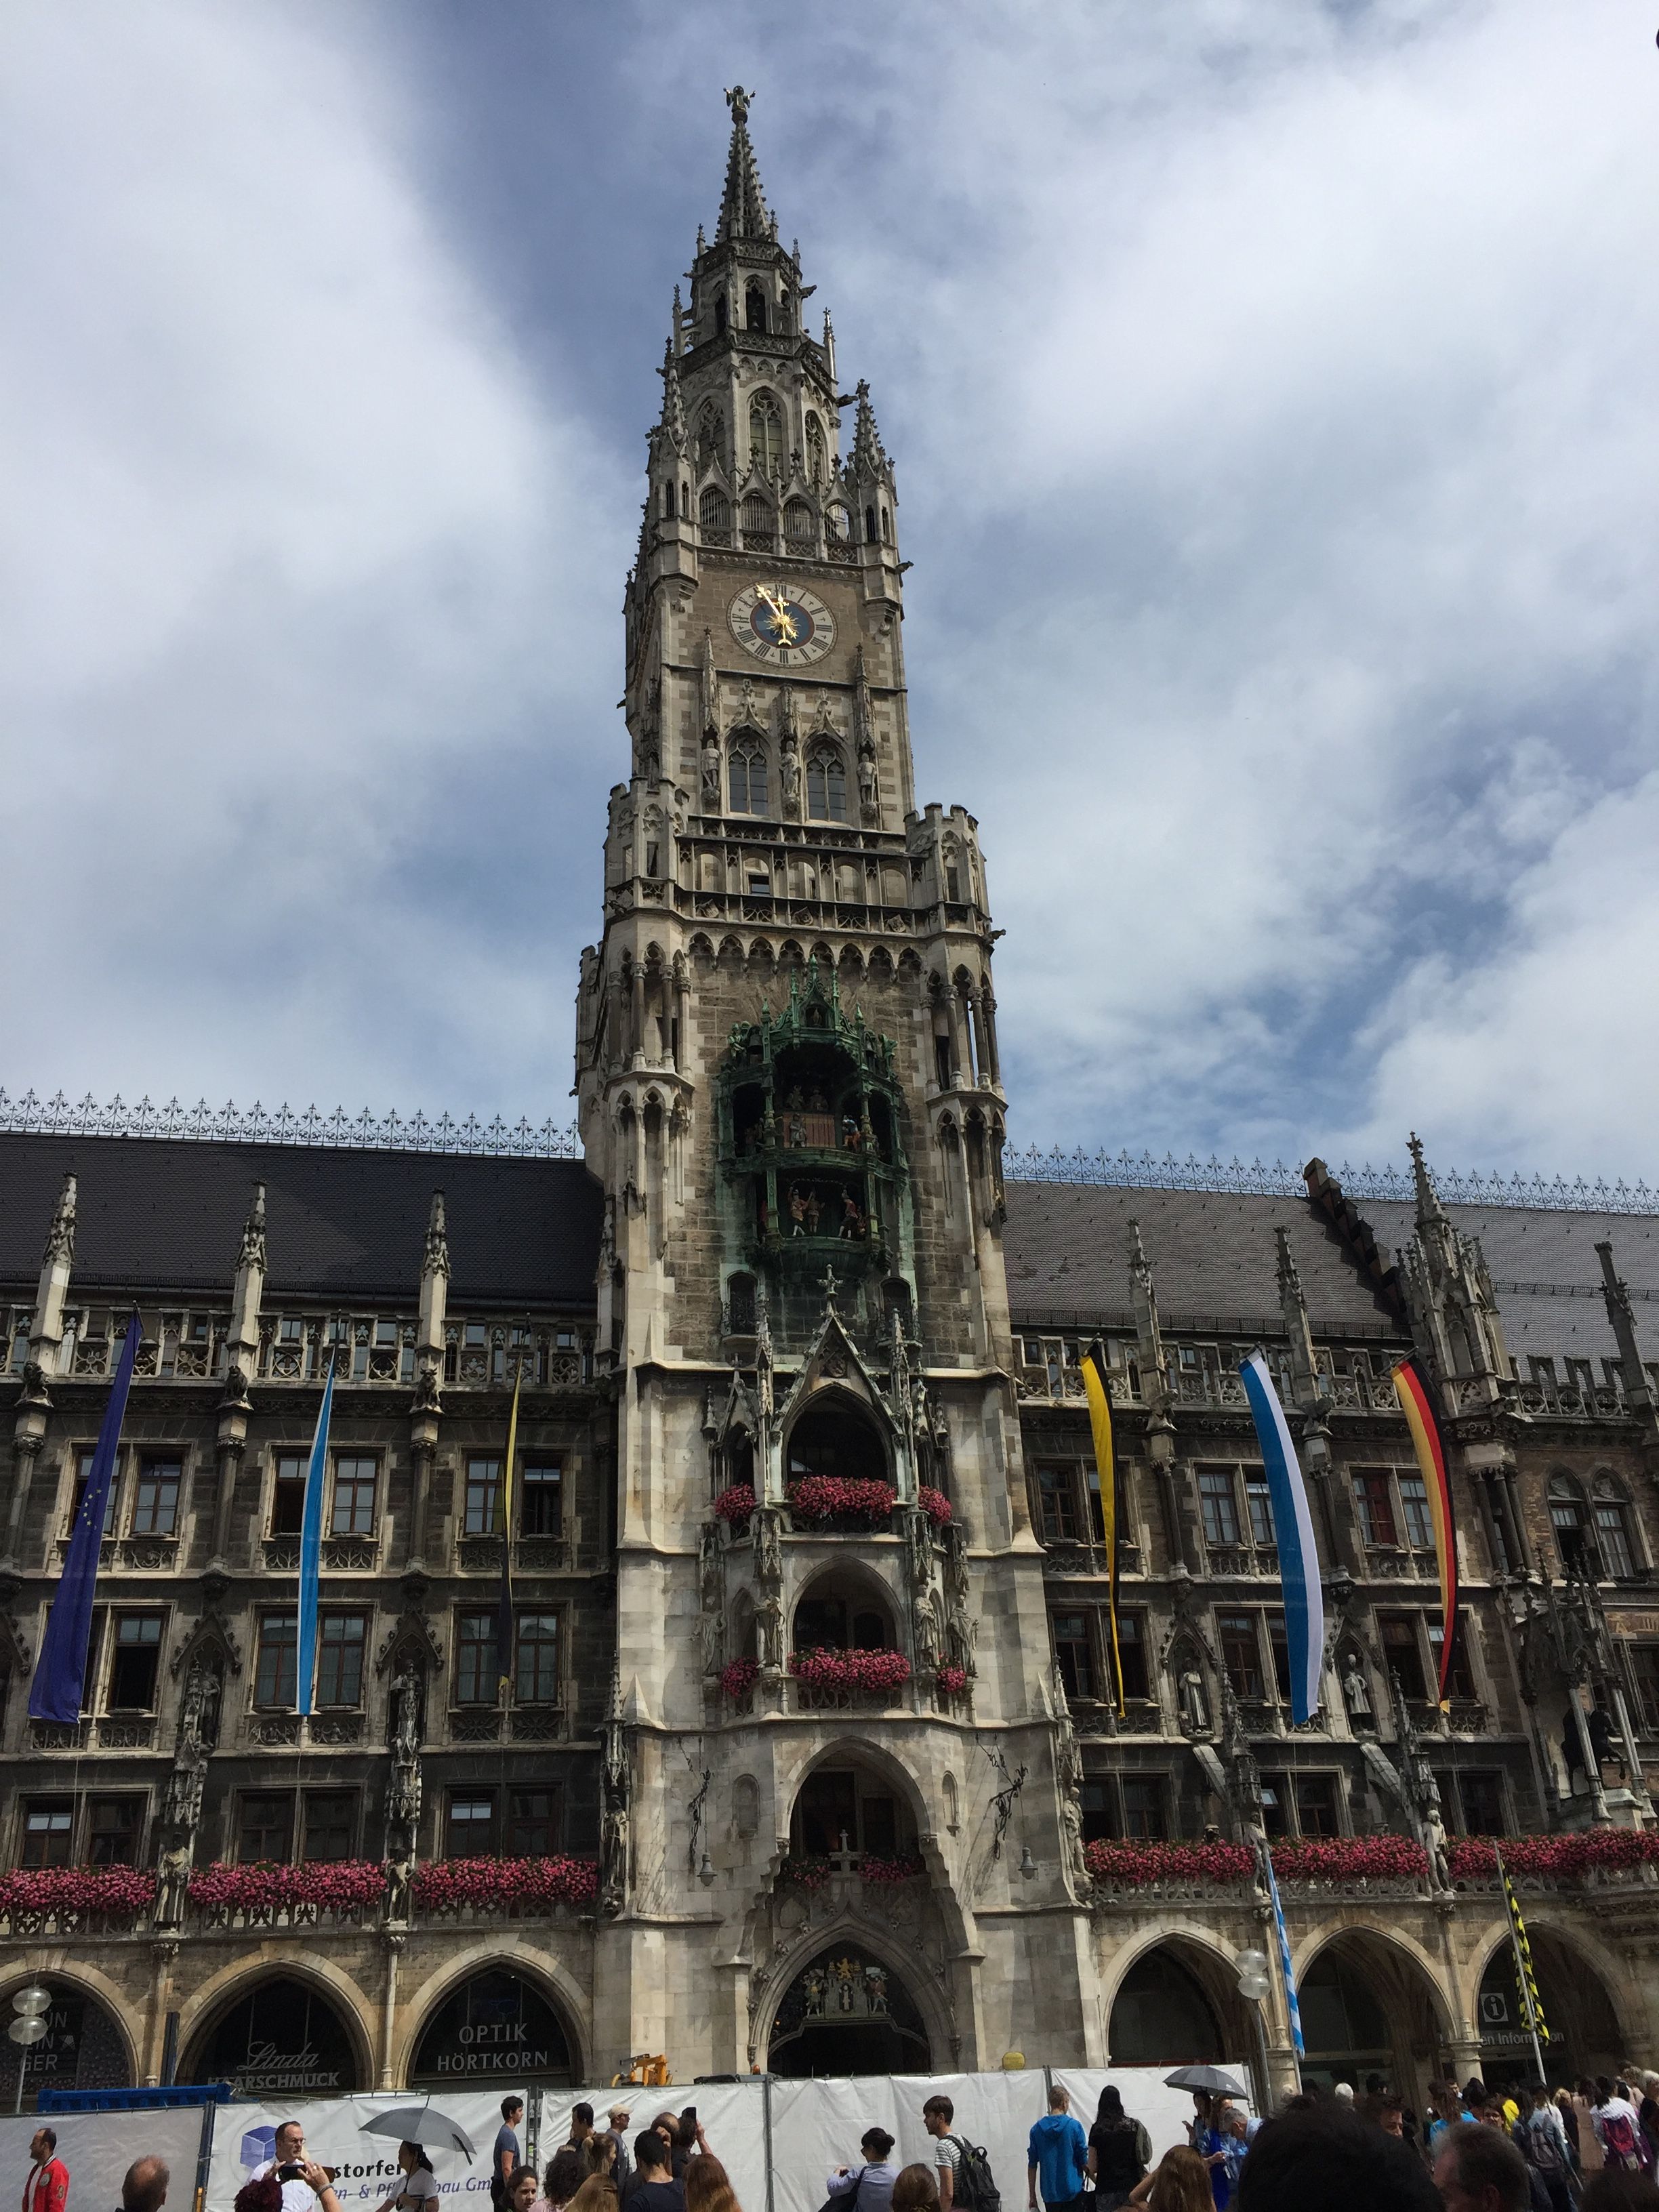 Marienplatz and the Glockenspiel clock at noon | Munich | Pinterest ...